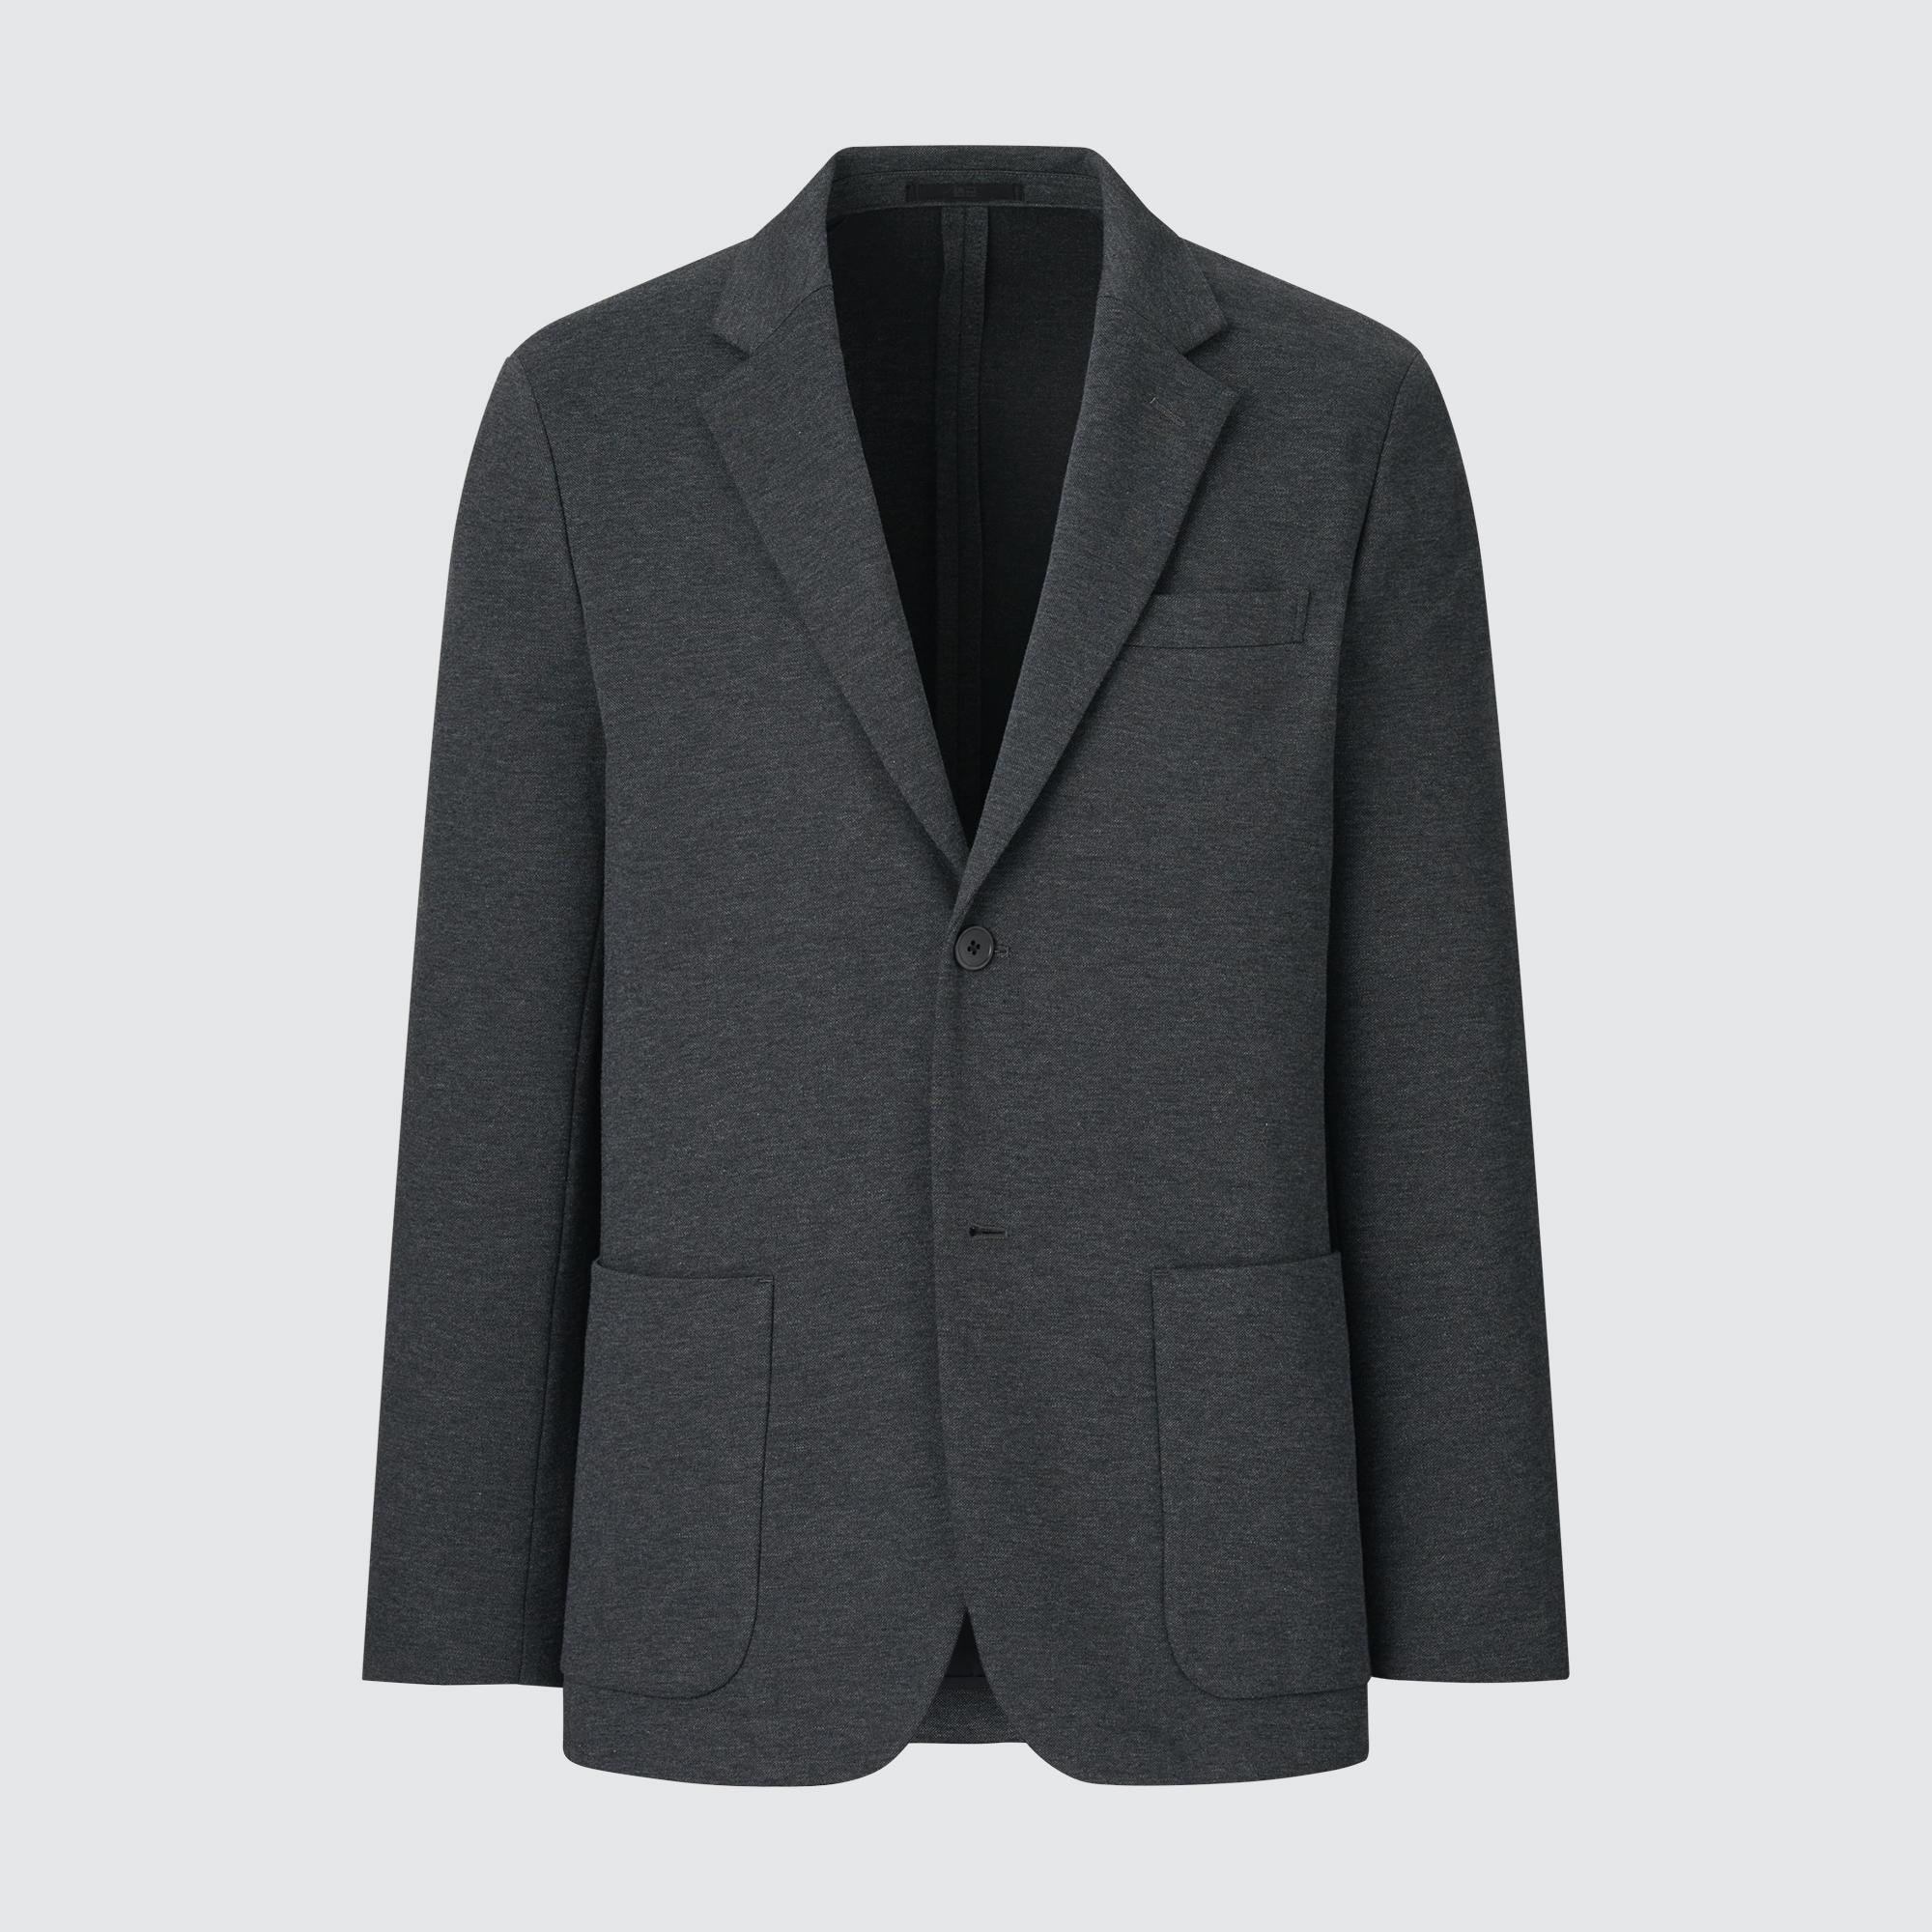 Куртка UNIQLO Comfort 2B из хлопка, темно-серый куртка uniqlo comfort 2b из хлопка темно серый